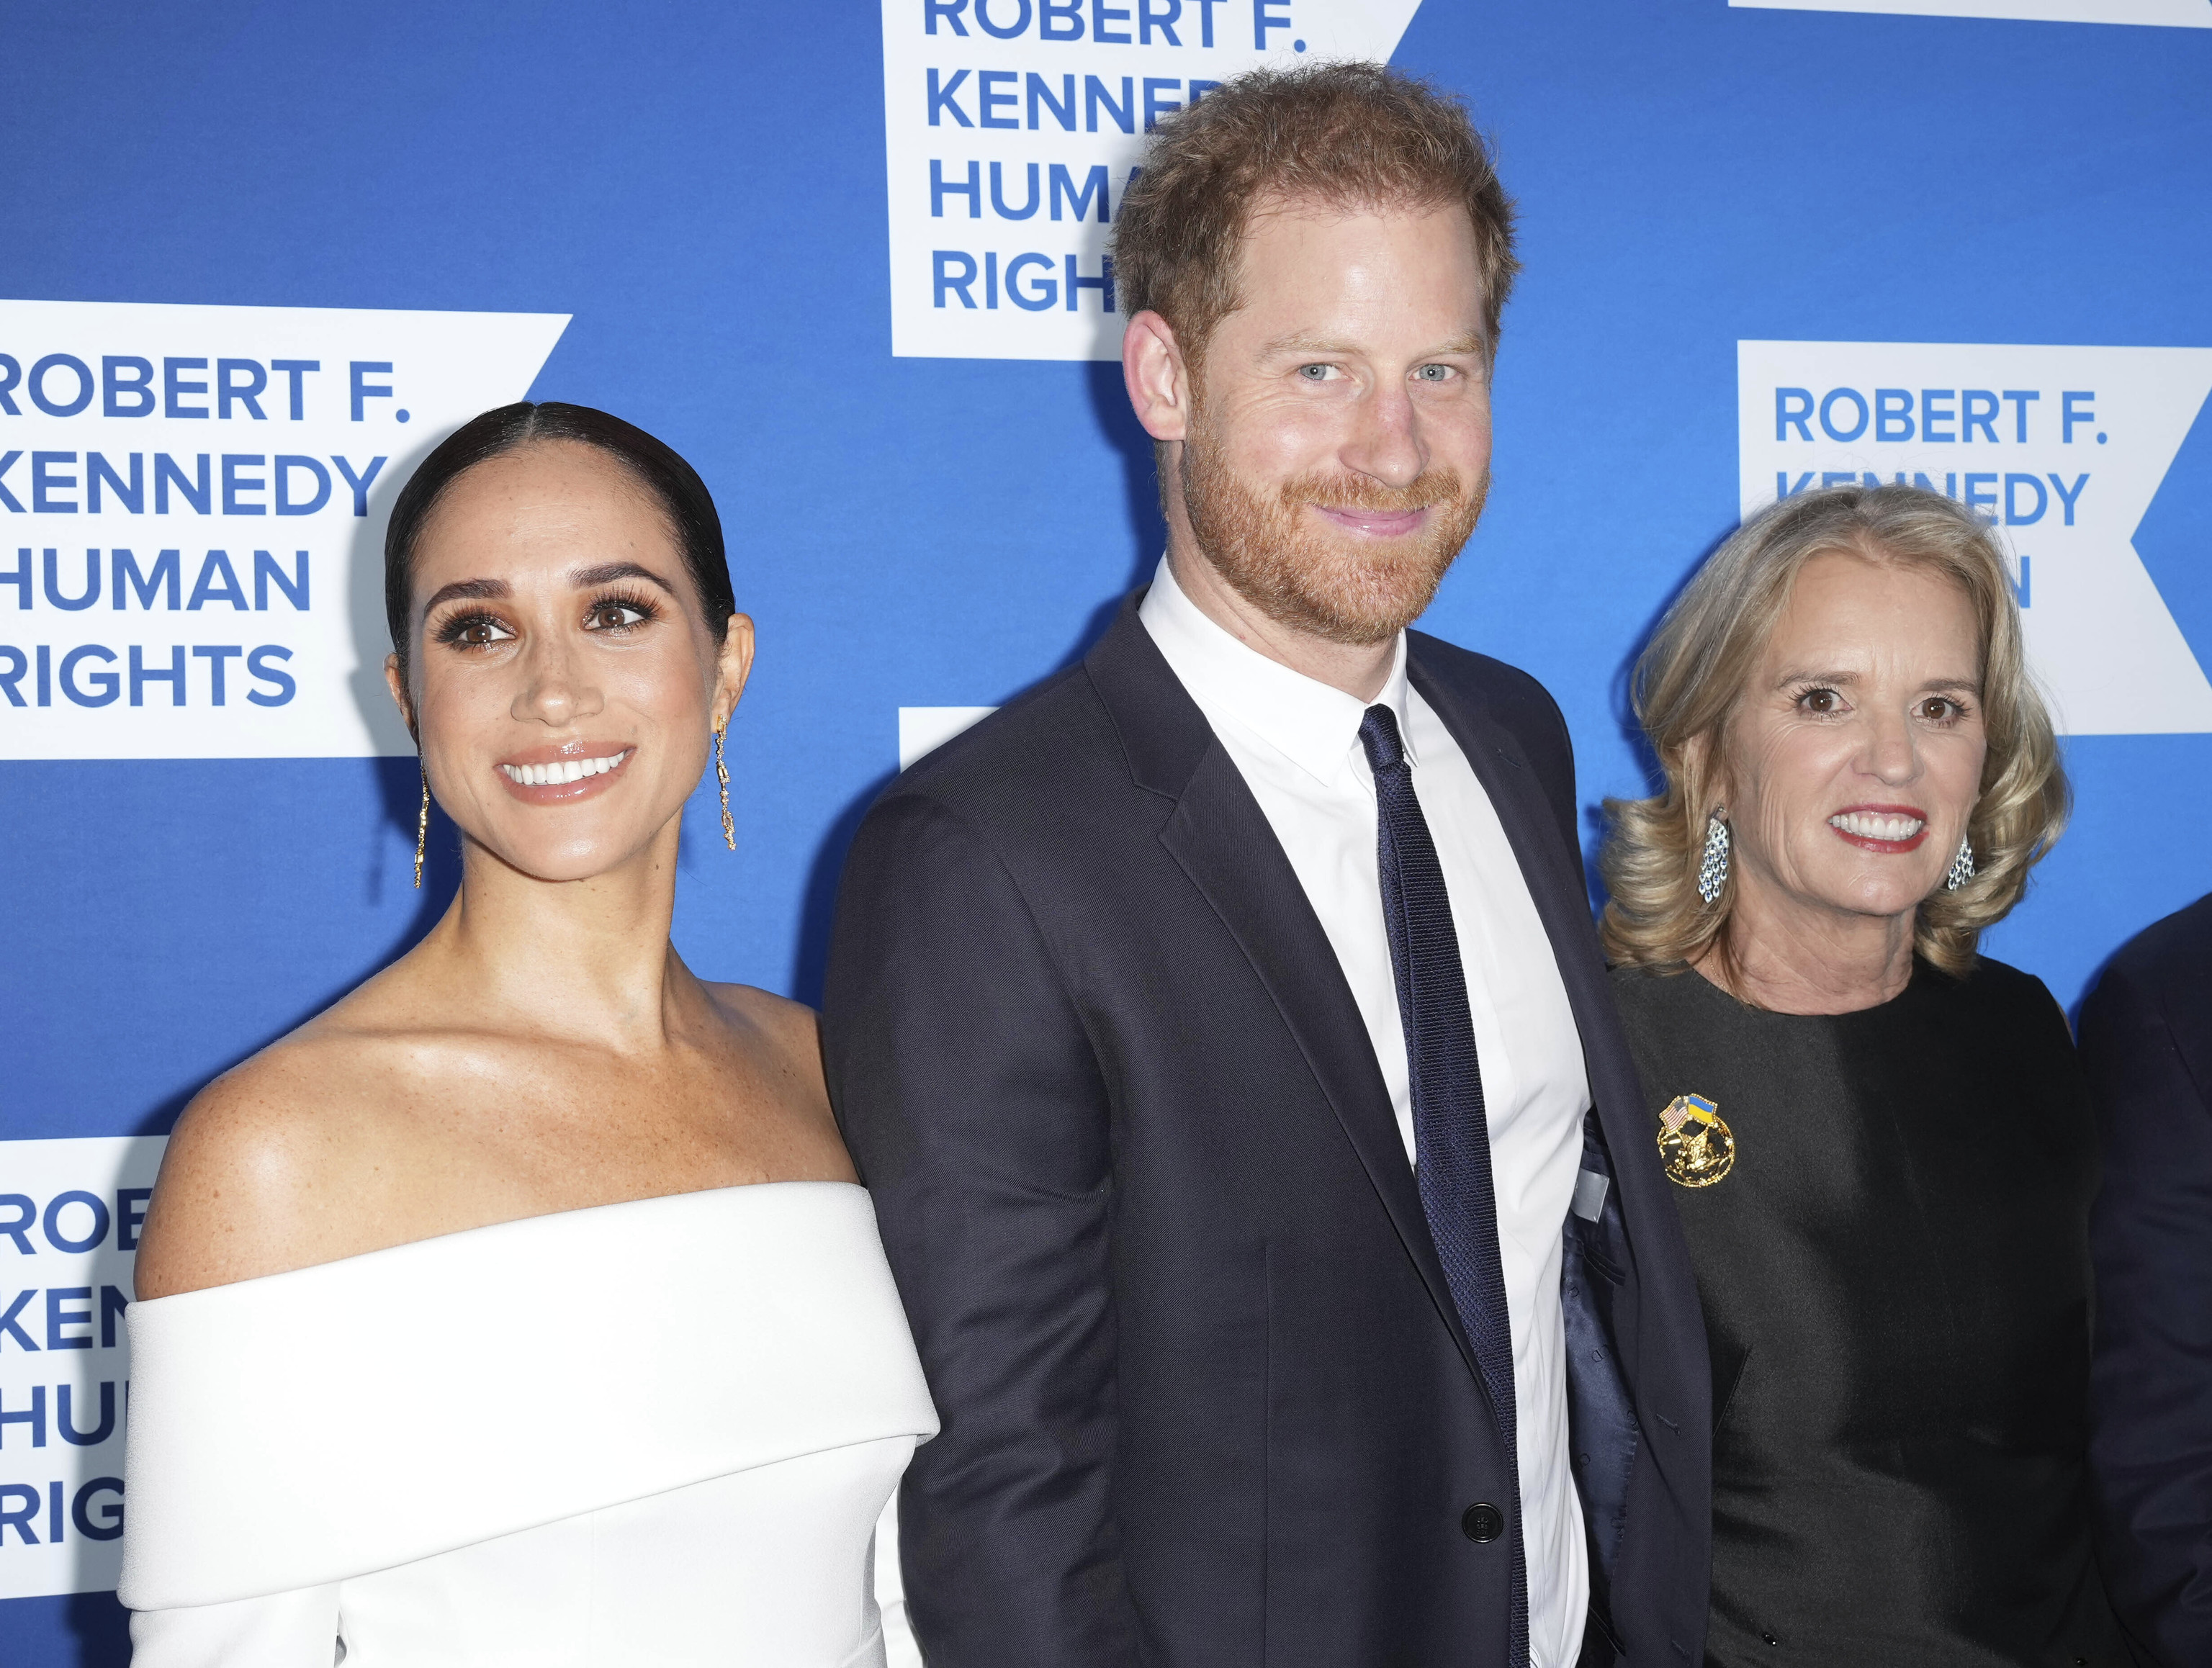 Harry y Meghan con Kerry Kennedy en la gala en la que recibieron un premio por denunciar el racismo estructural de su familia.